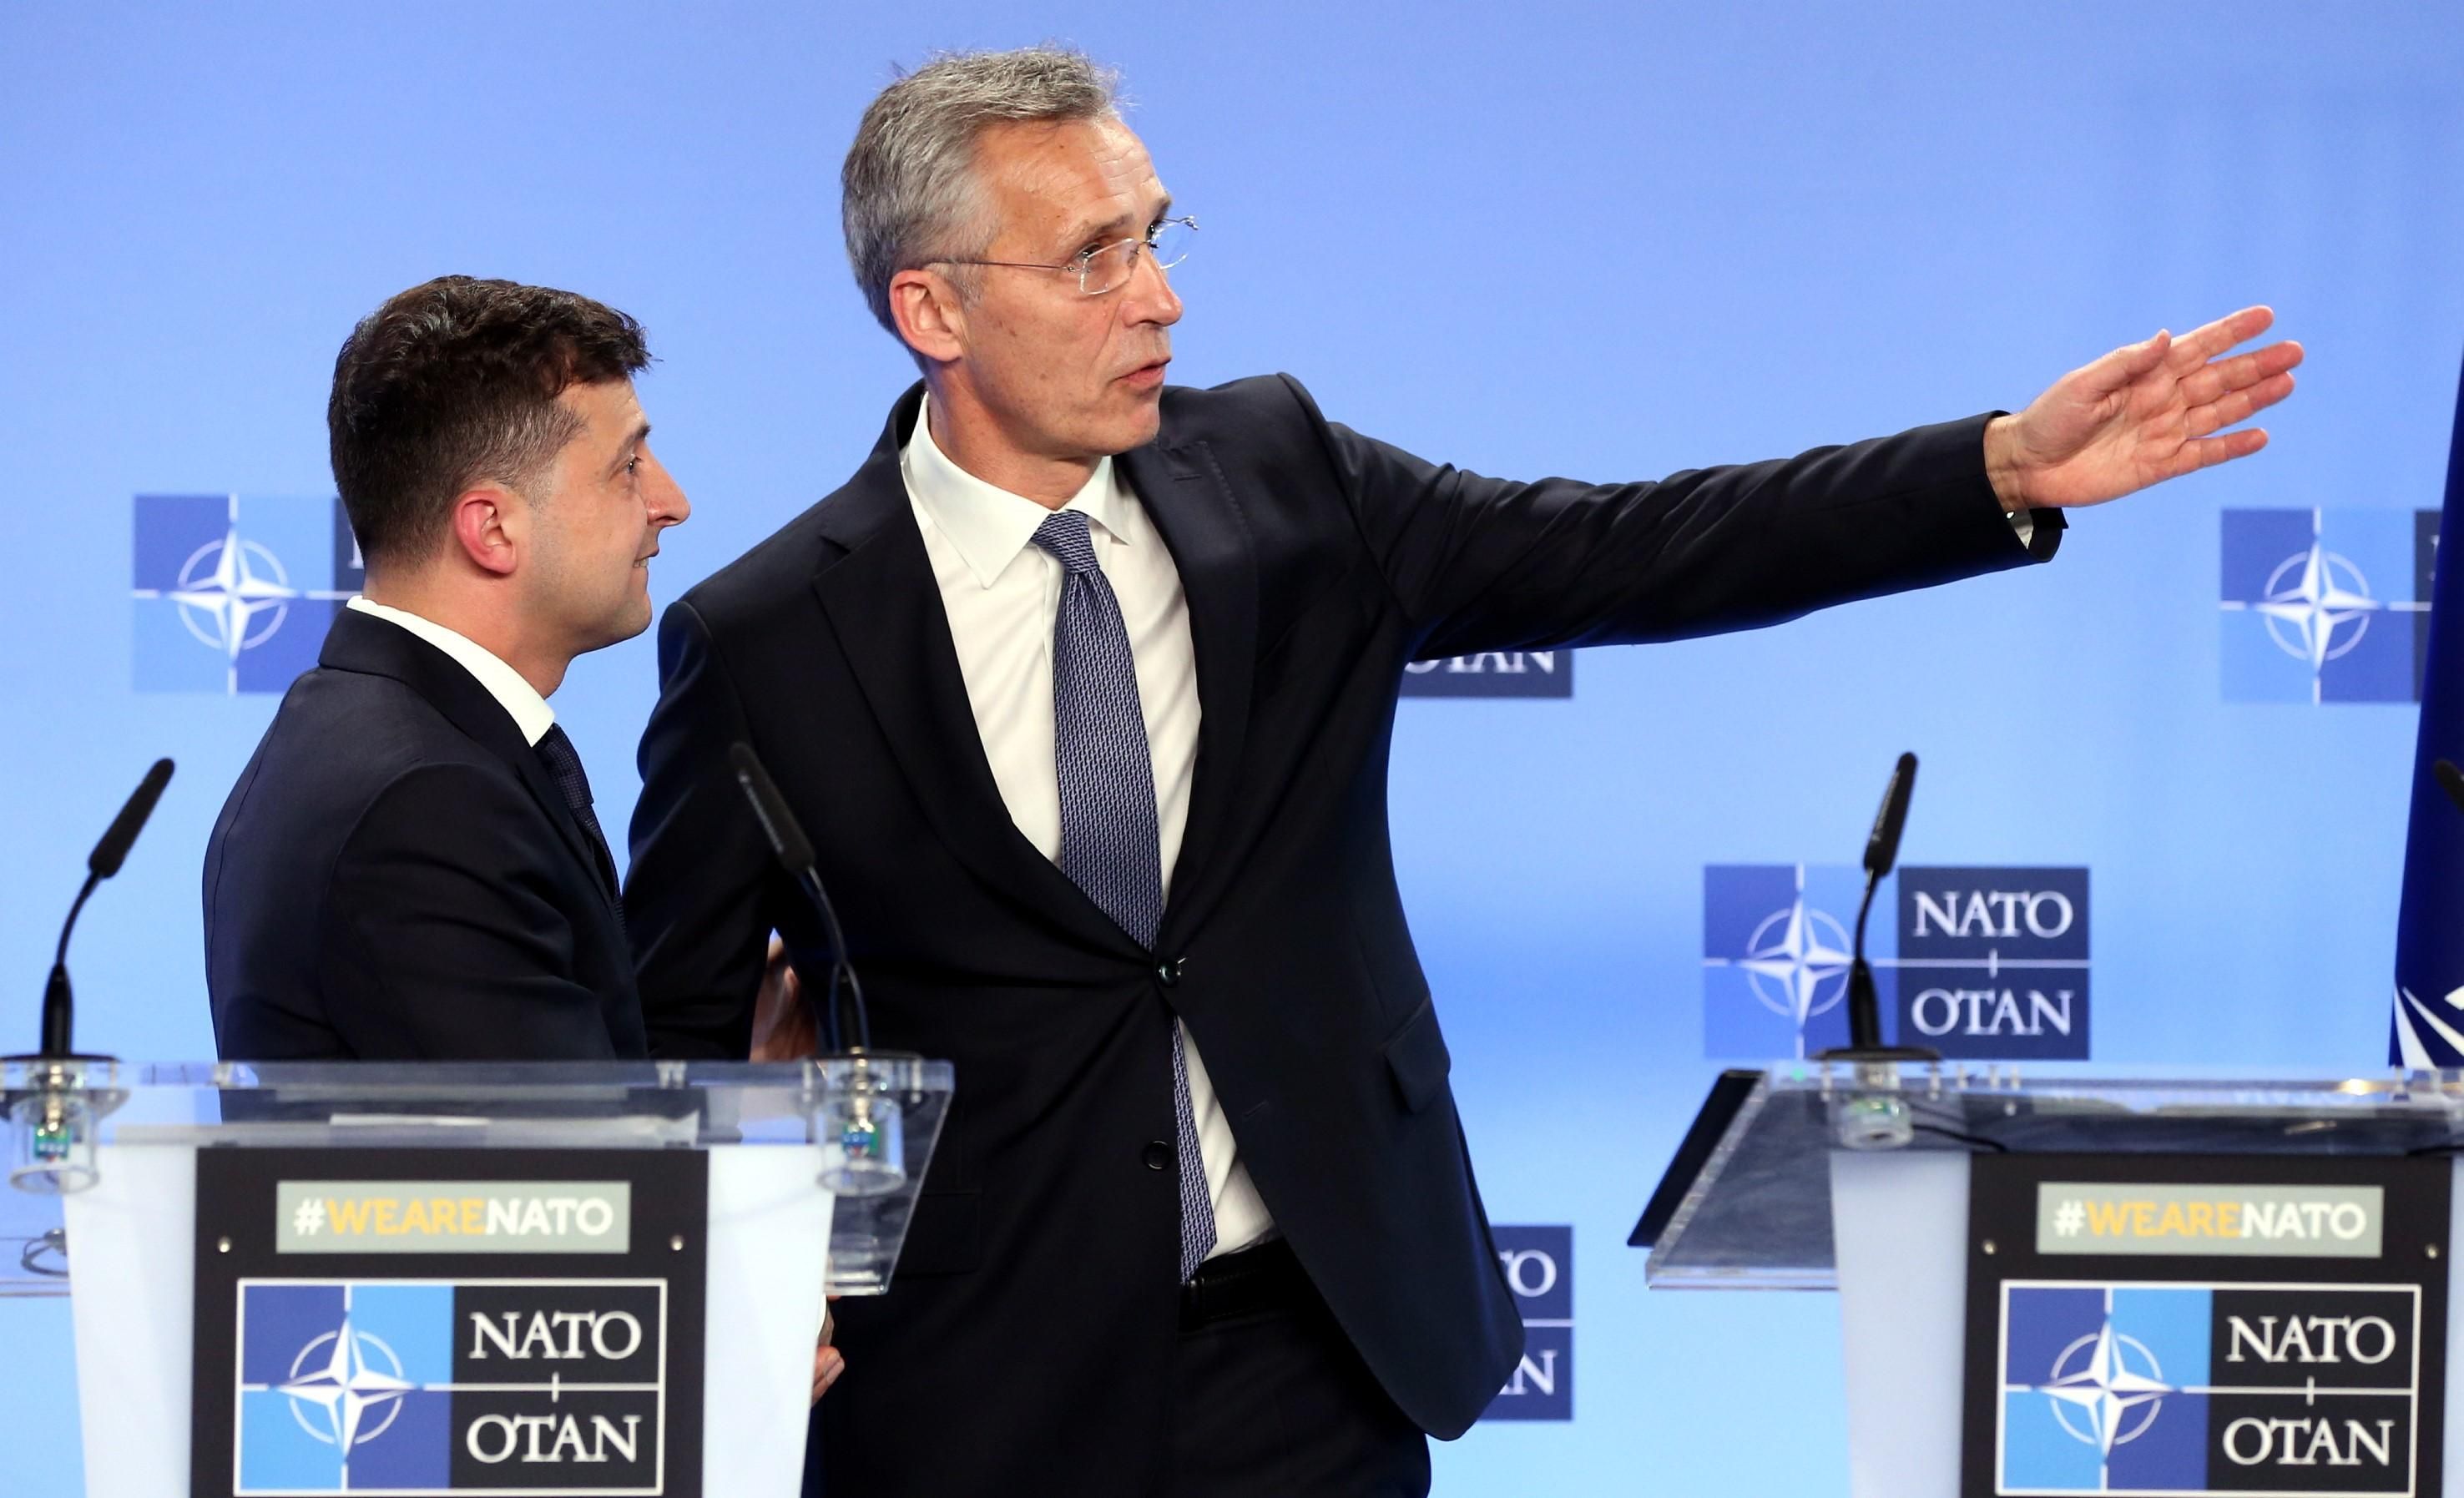 Переговоры с Россией и курс на НАТО: как прошел первый зарубежный визит президента Зеленского